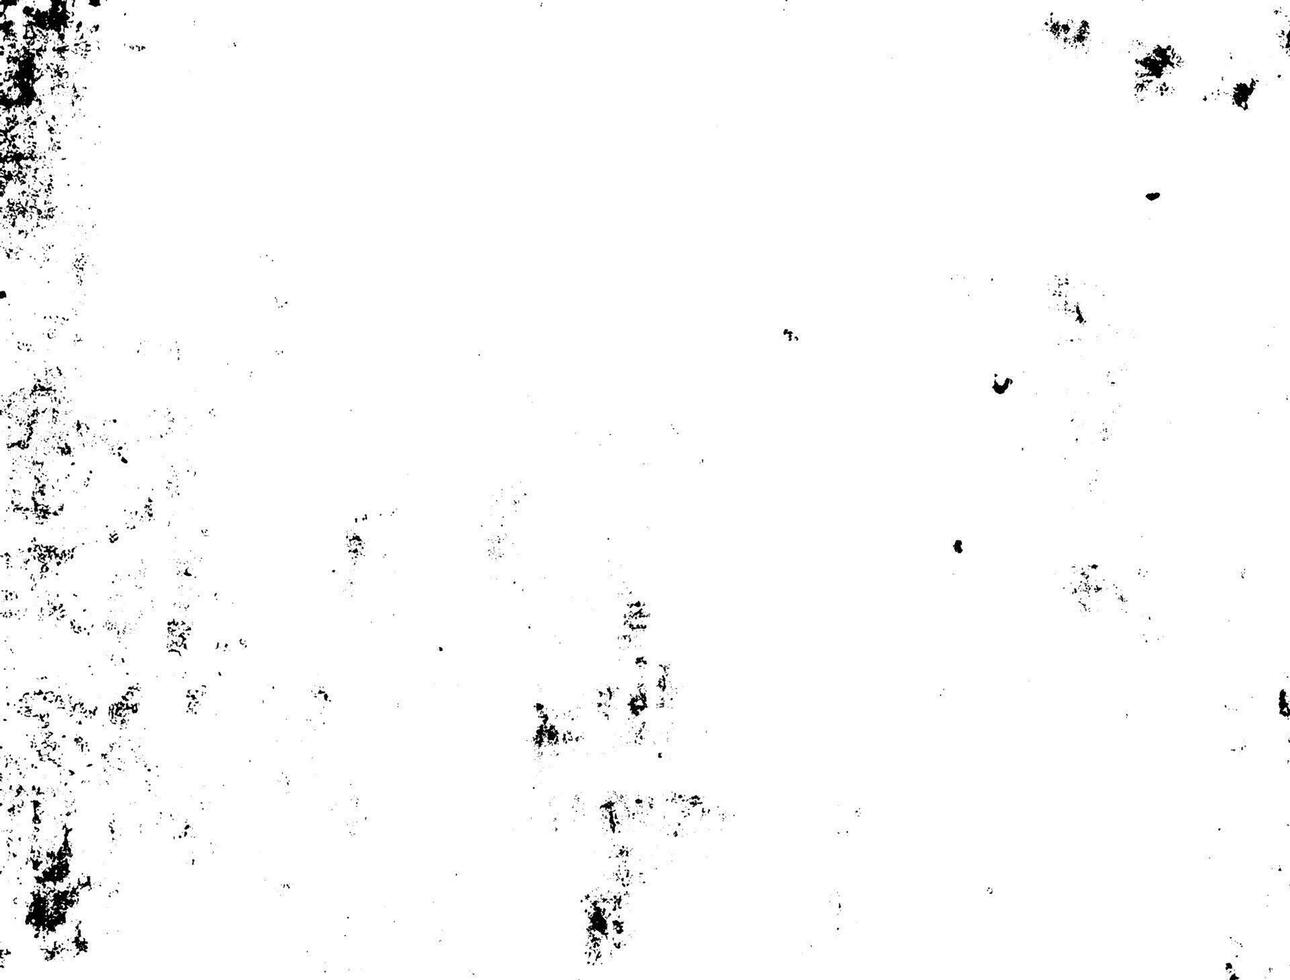 nero e bianca grunge urbano struttura vettore con copia spazio. astratto illustrazione superficie polvere e ruvido sporco parete sfondo con vuoto modello. angoscia o sporco e grunge effetto concetto - vettore